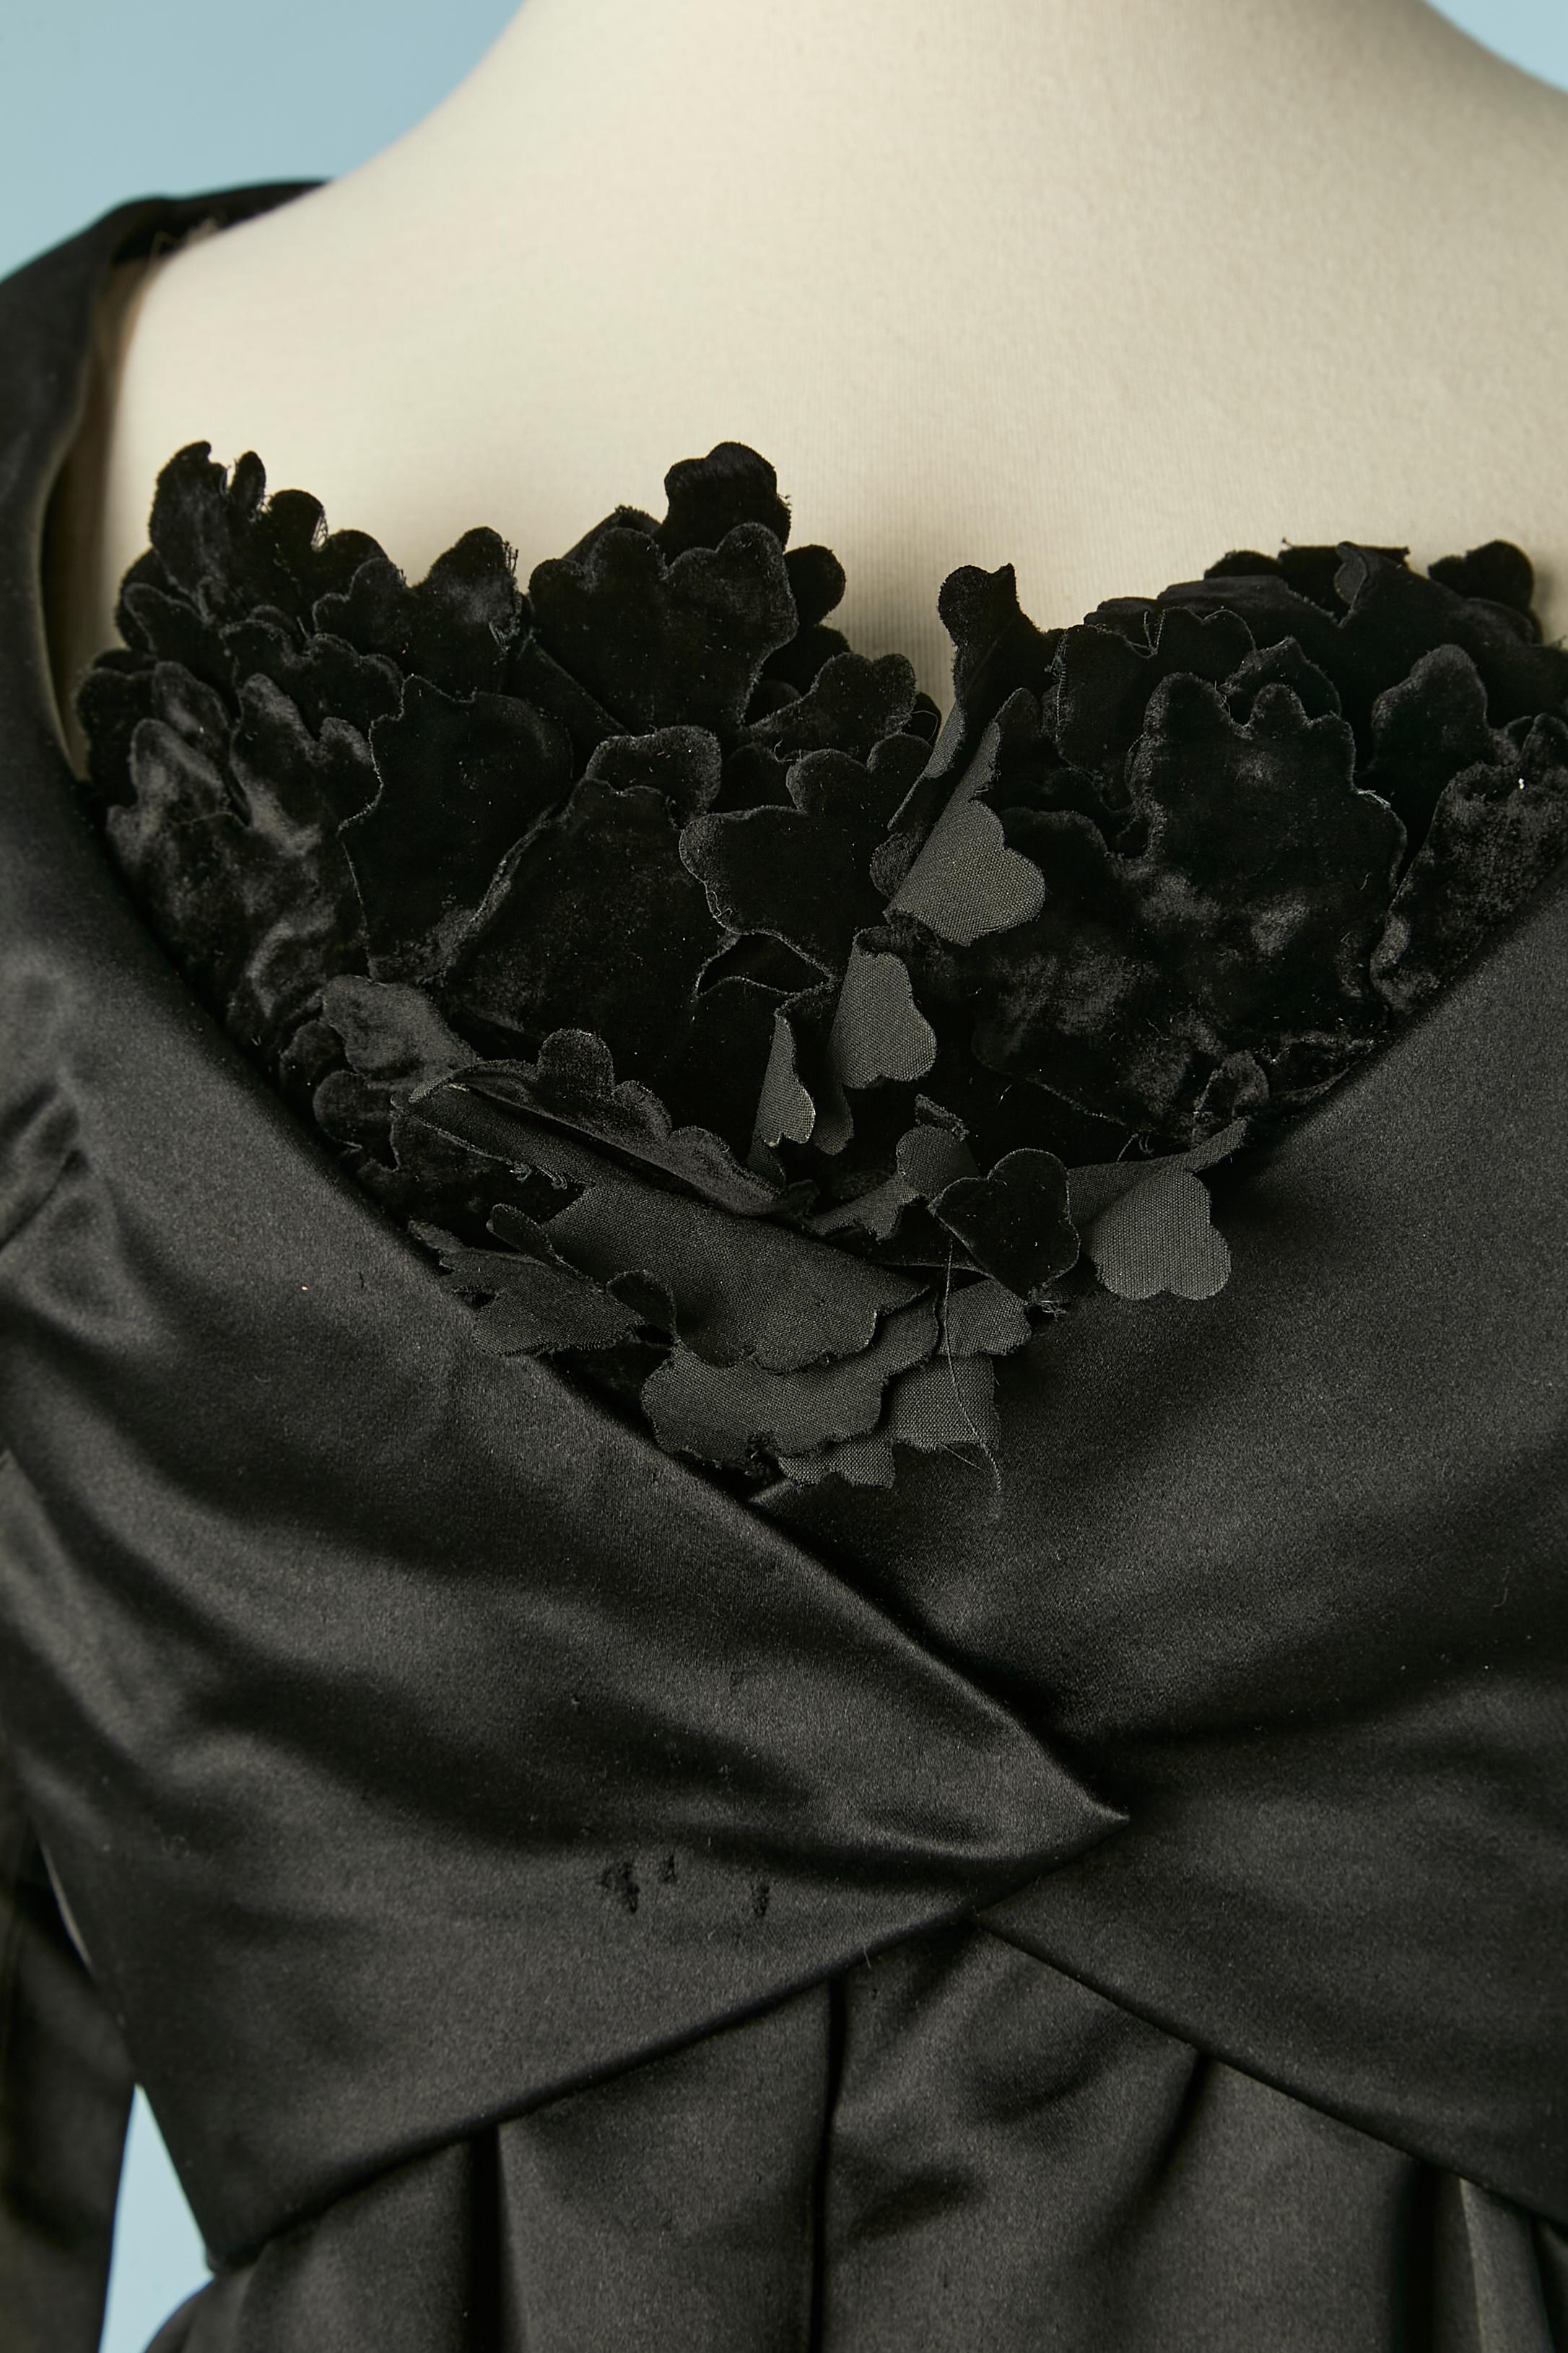 Schwarzes Boléro- und Bustierkleid aus Satin mit schwarzen Samtblumen auf der Büste. Futter aus Seidenorganza. Druckknopfverschluss an der Jacke und auch am Kleid in der vorderen Mitte. Der Boléro ist auf dem Kleid aufgenäht und es ist mit Knochen